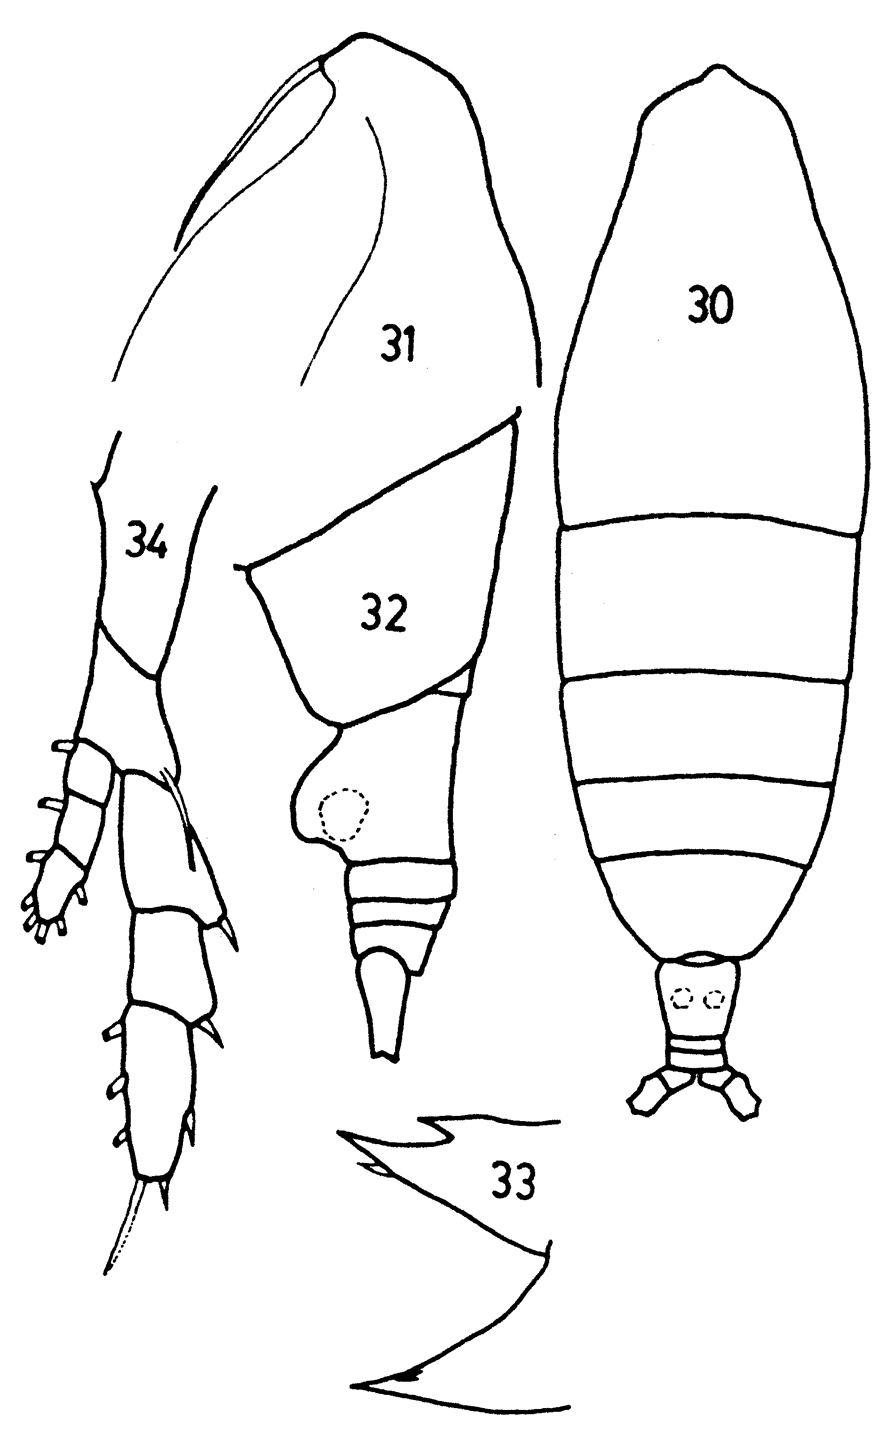 Espce Haloptilus longicornis - Planche 12 de figures morphologiques